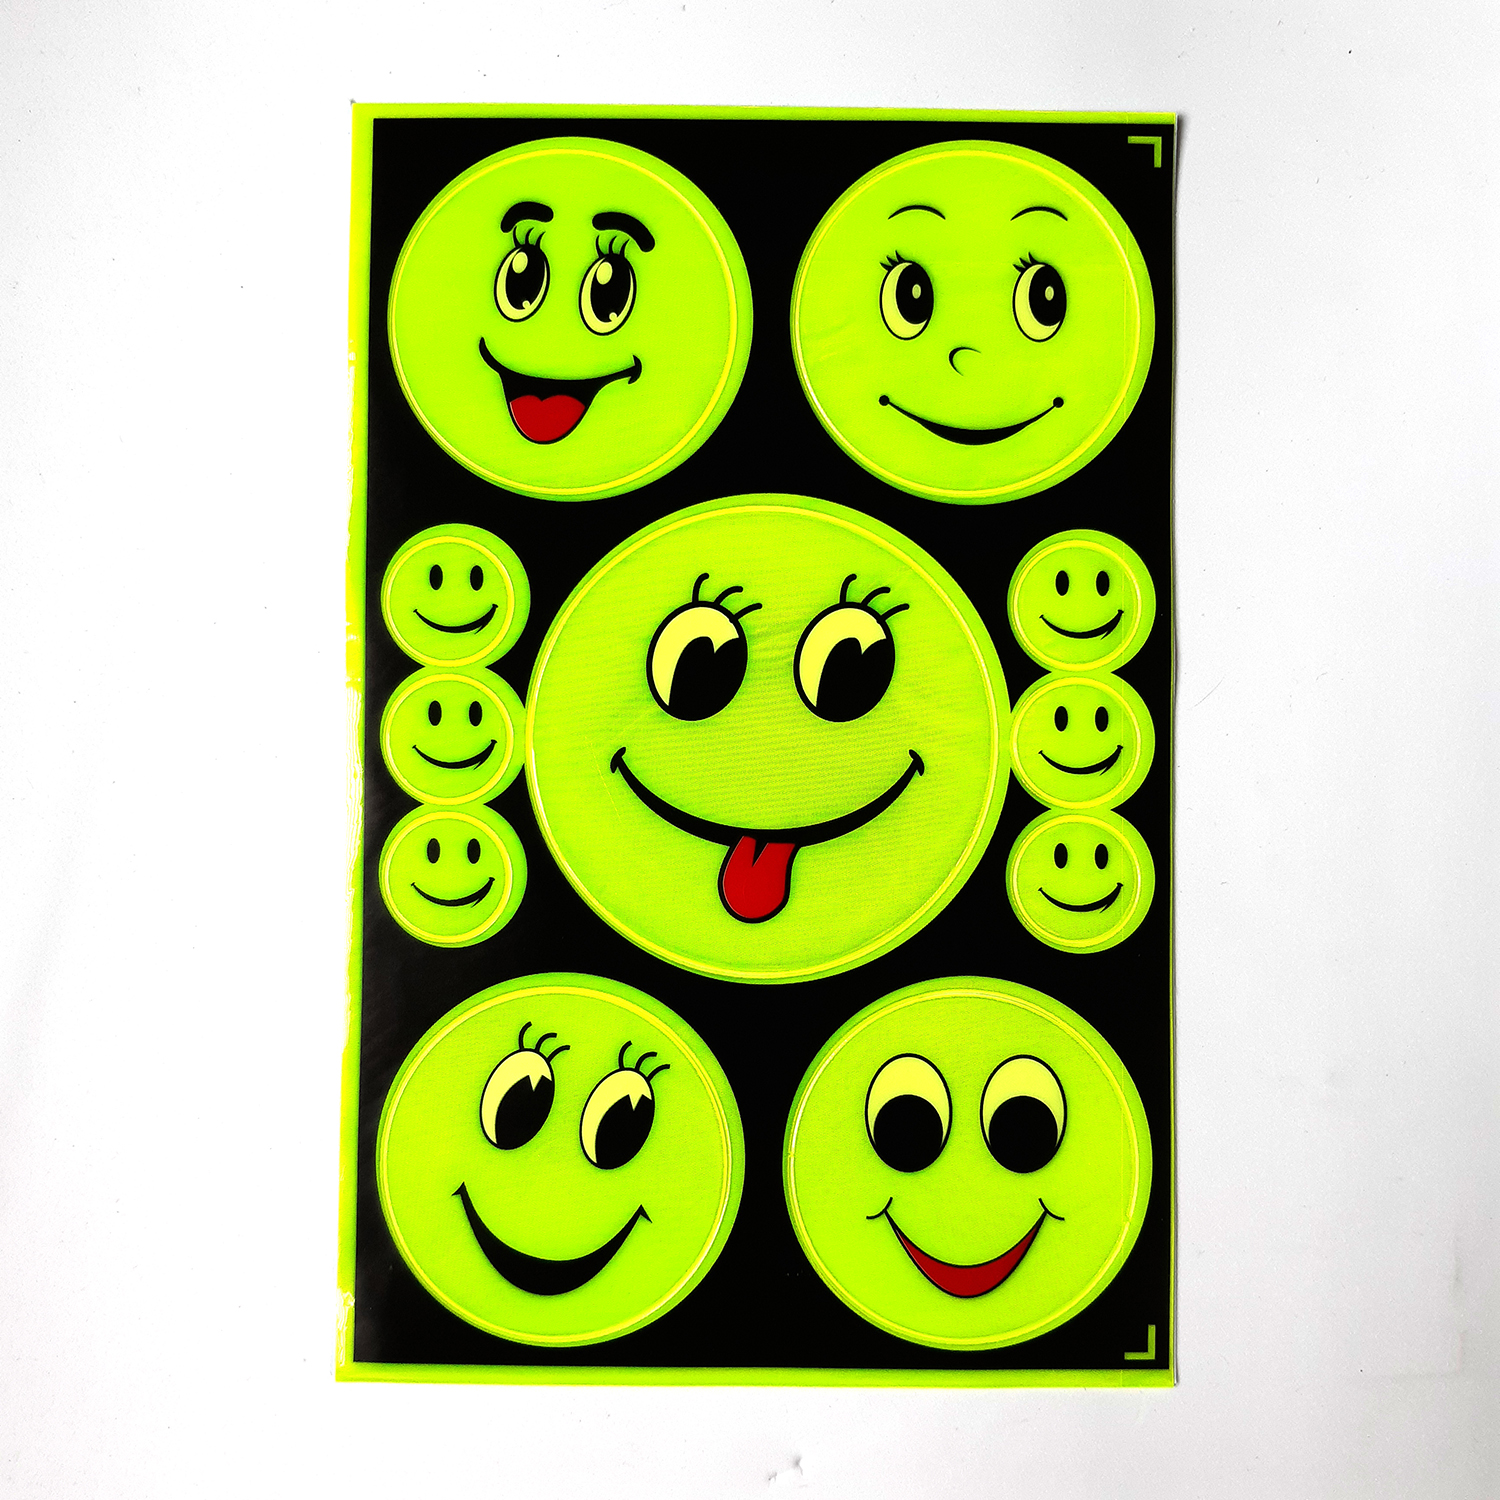 Tấm Sticker dán phản quang 11 hình mặt cười